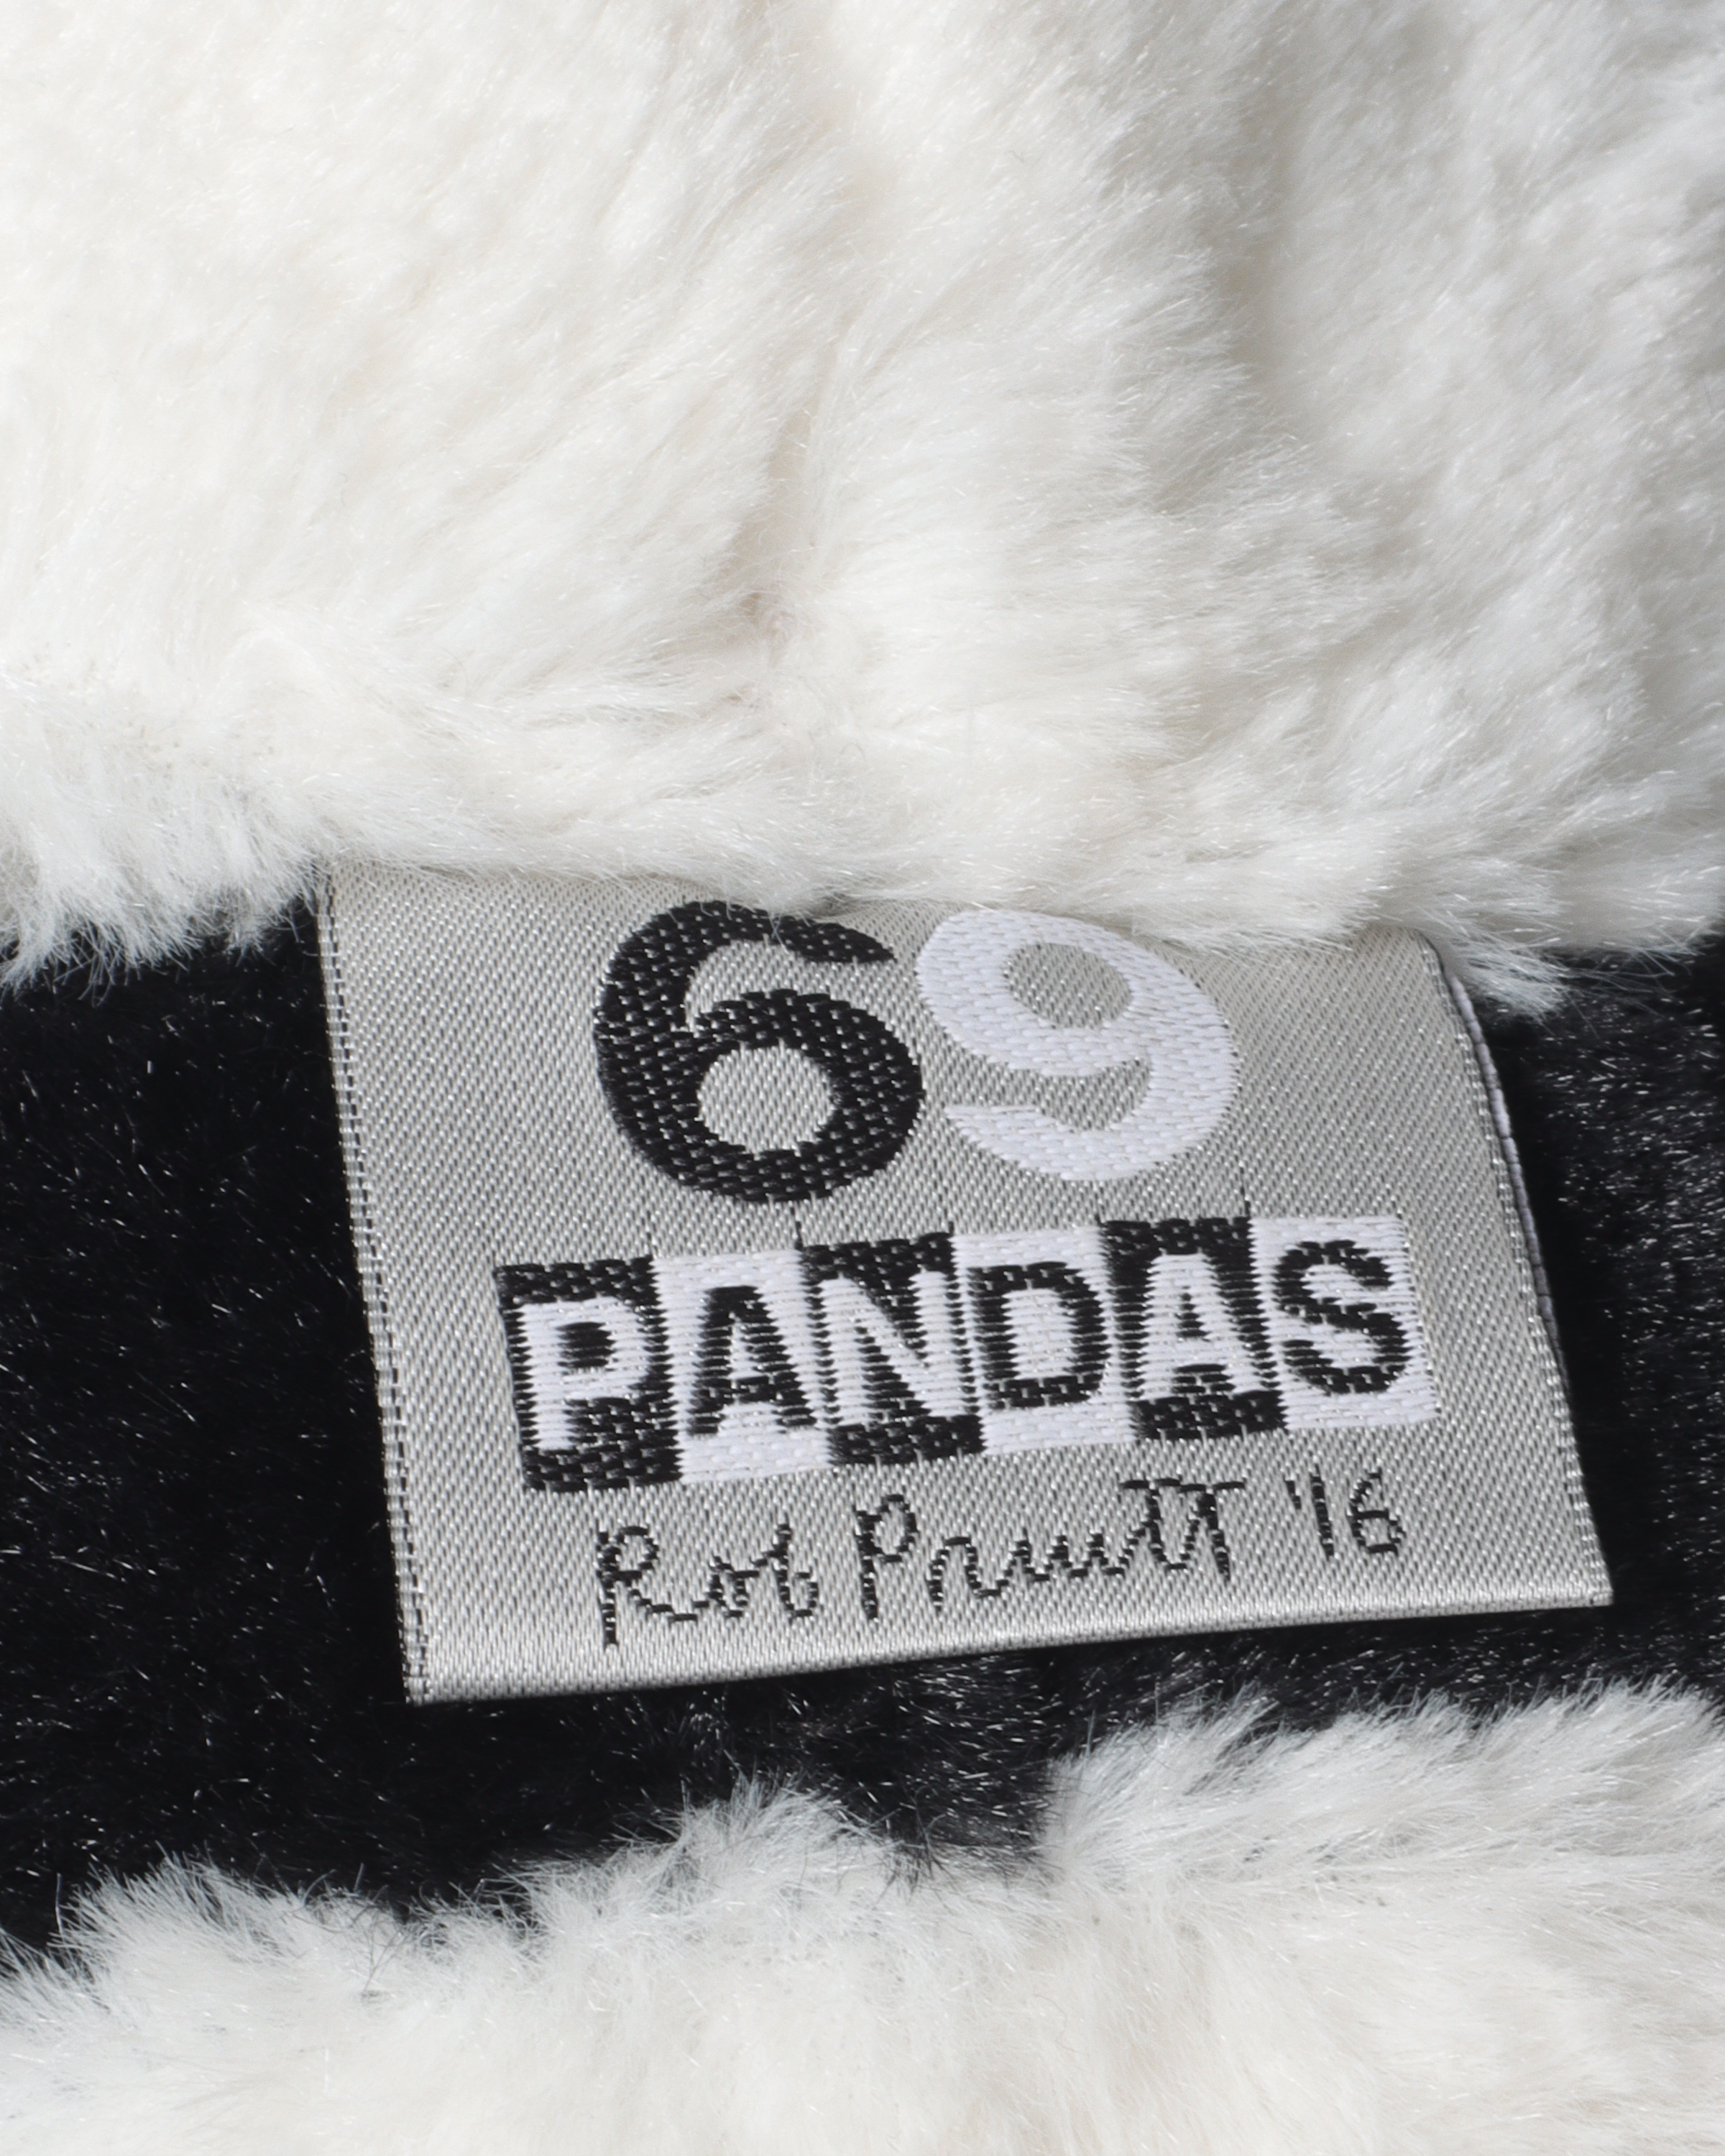 "69 Pandas" Plush (2016)